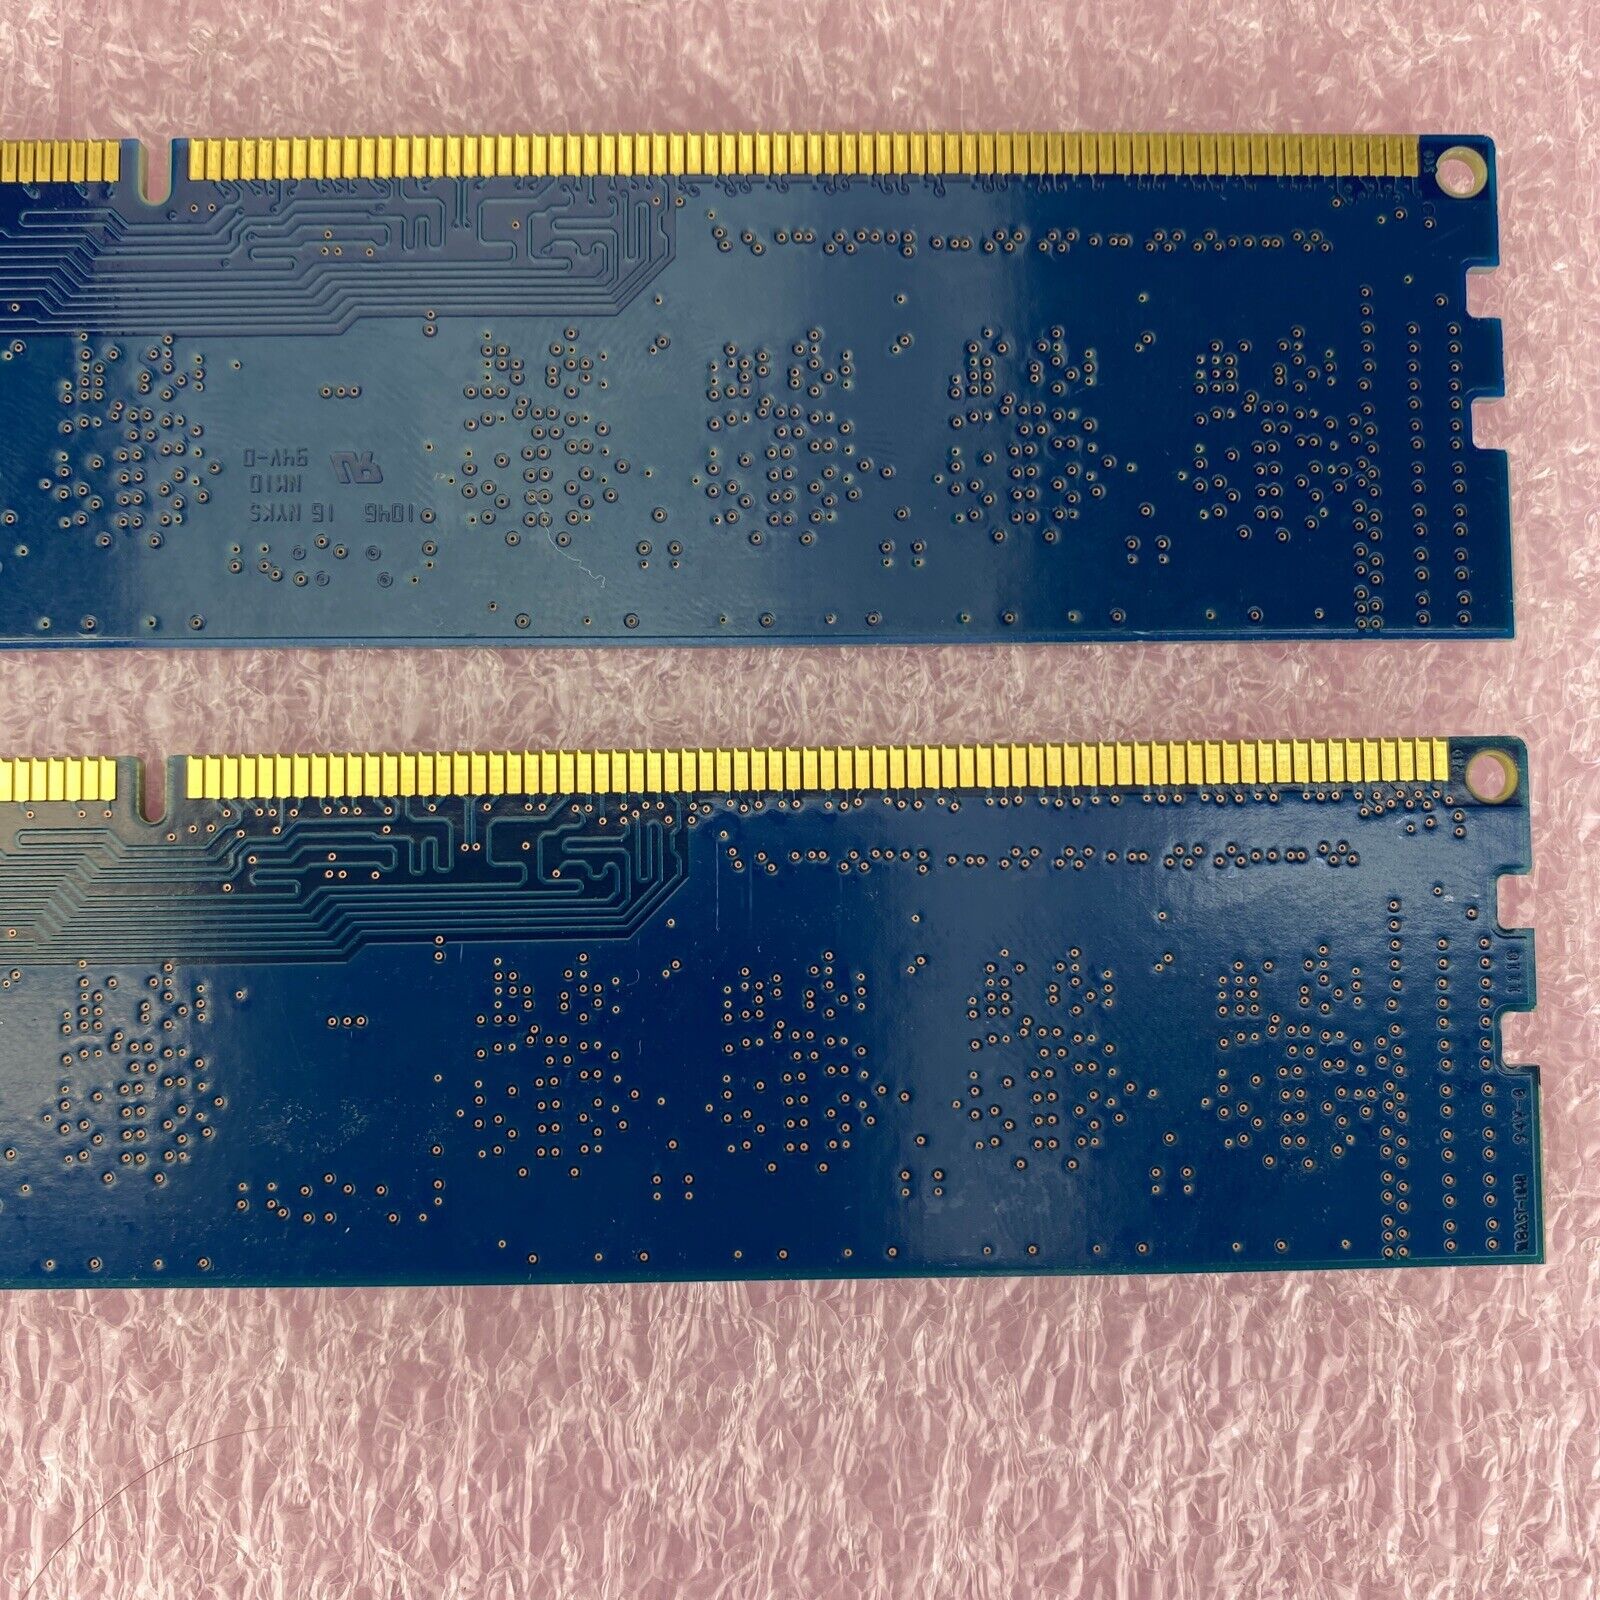 2x 2GB Nanya NT2GC64B88B0NF-CG PC3-10600 1Rx8 1333MHz SDRAM memory